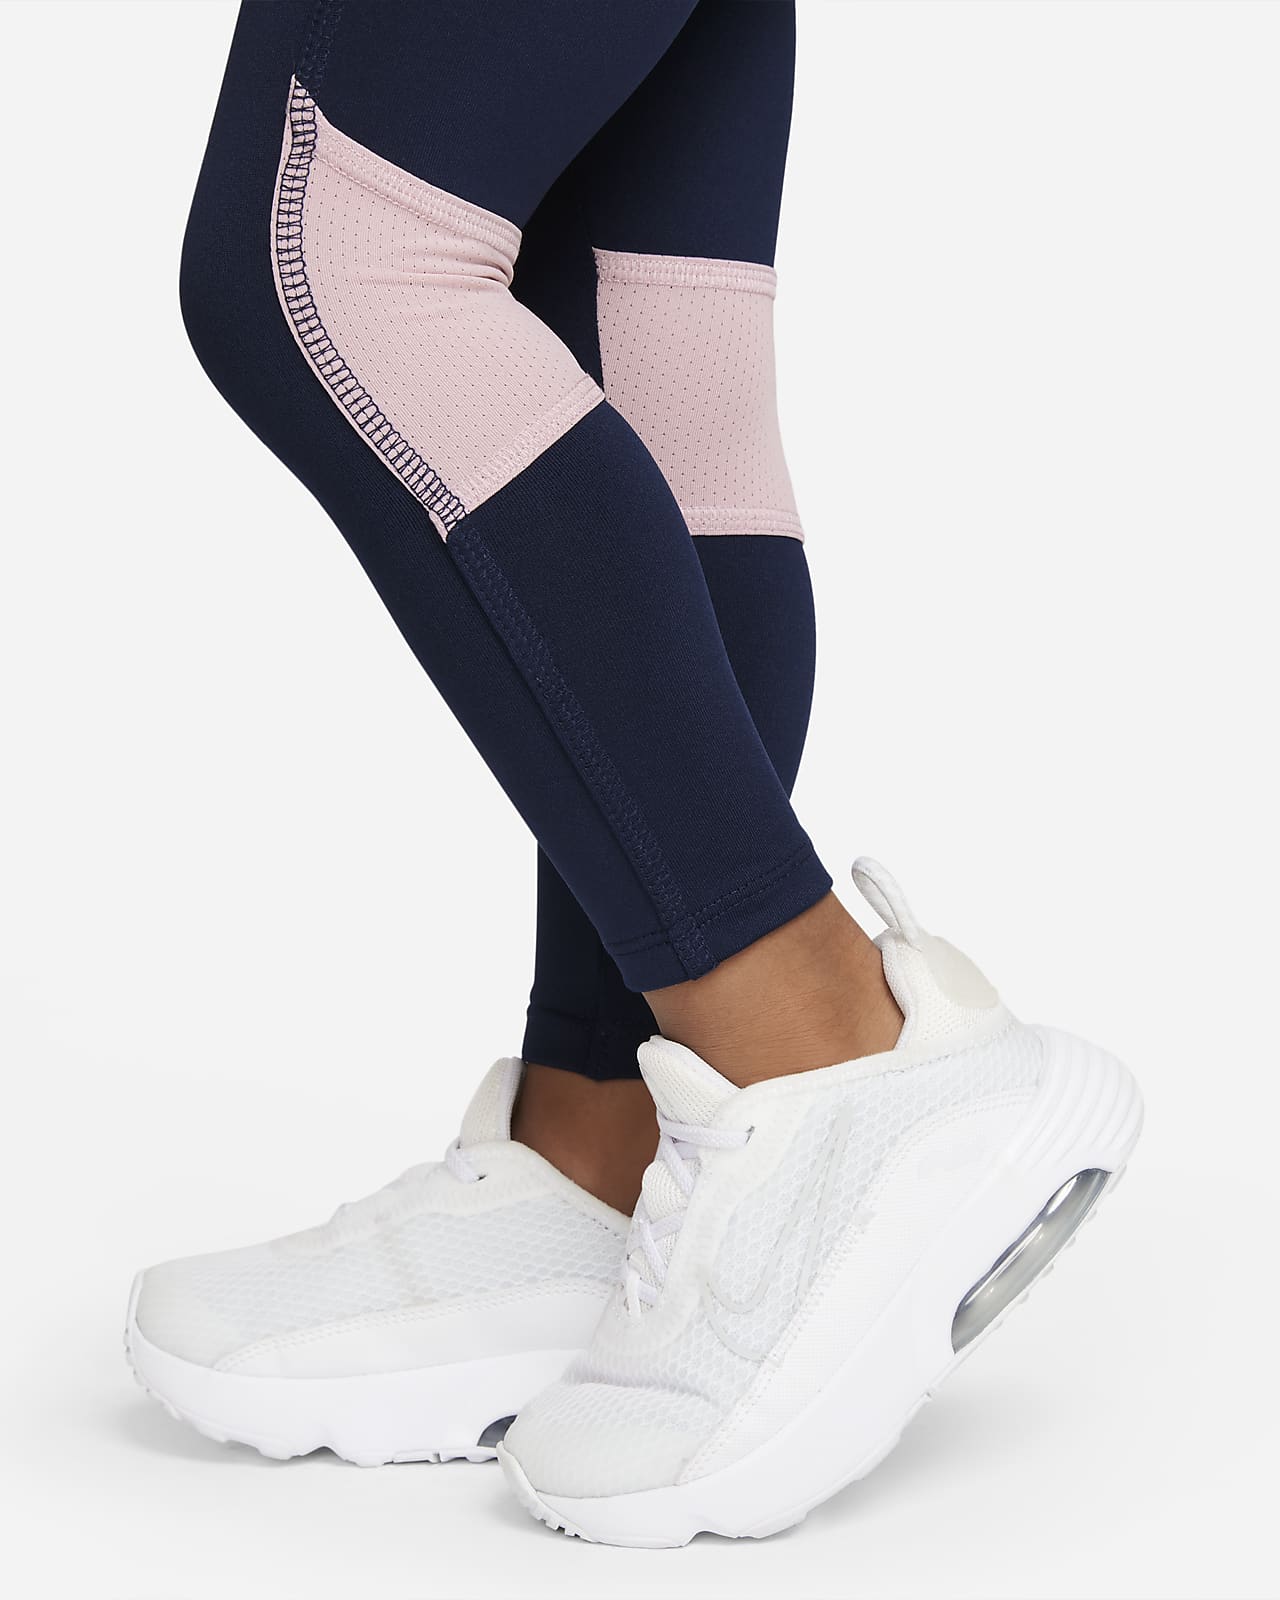 Nike Baby (12-24M) Printed Top and Leggings Set.